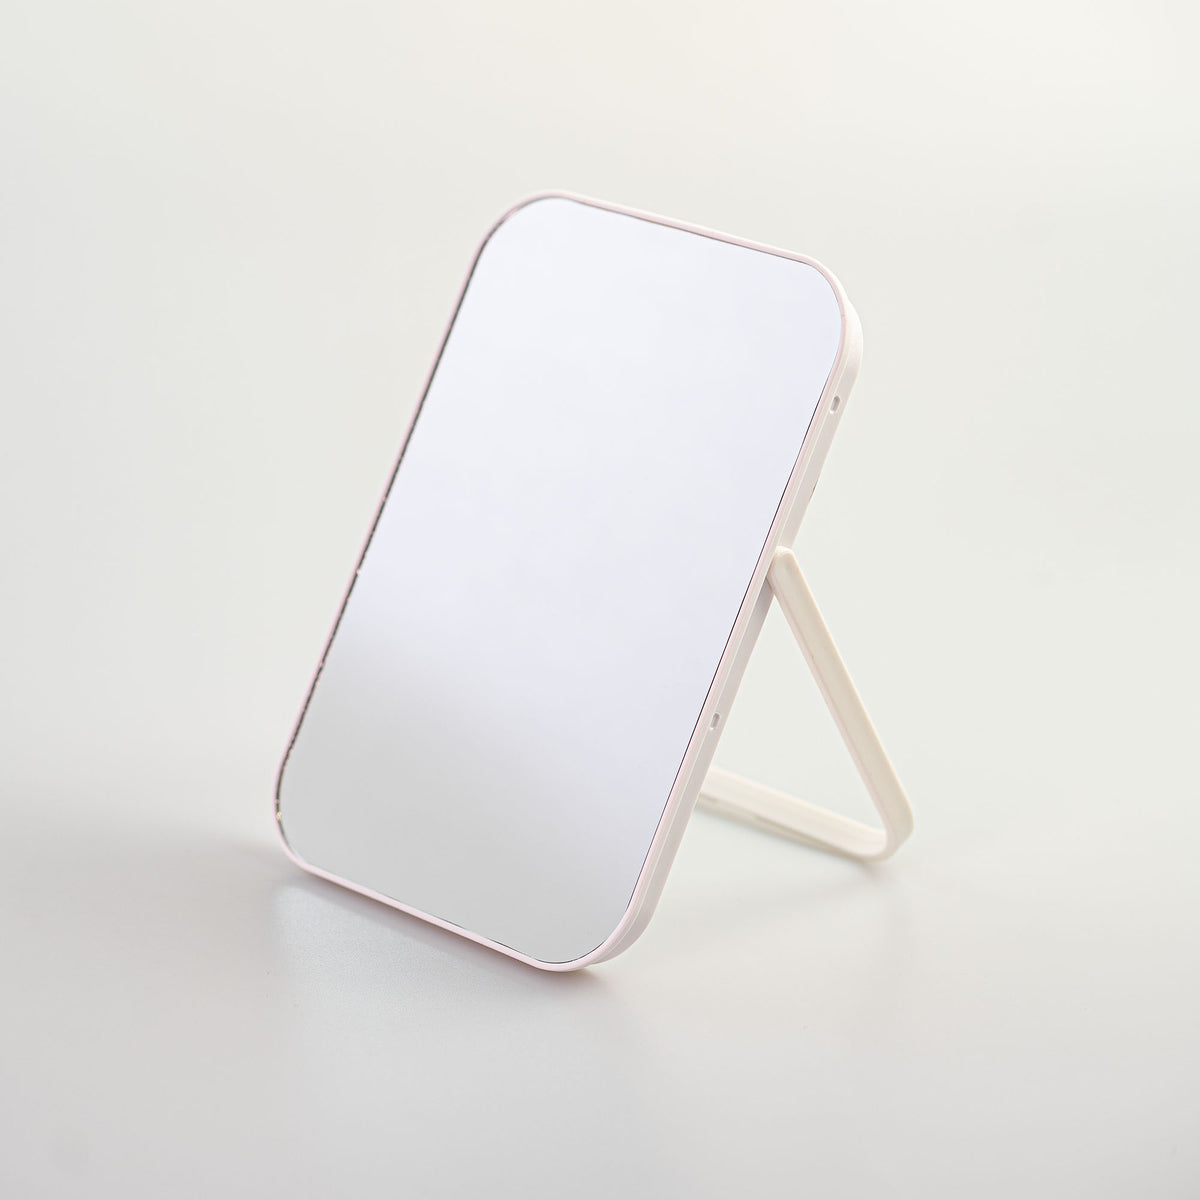 Specchio da tavola minimal bianco miniso accessori lifestyle